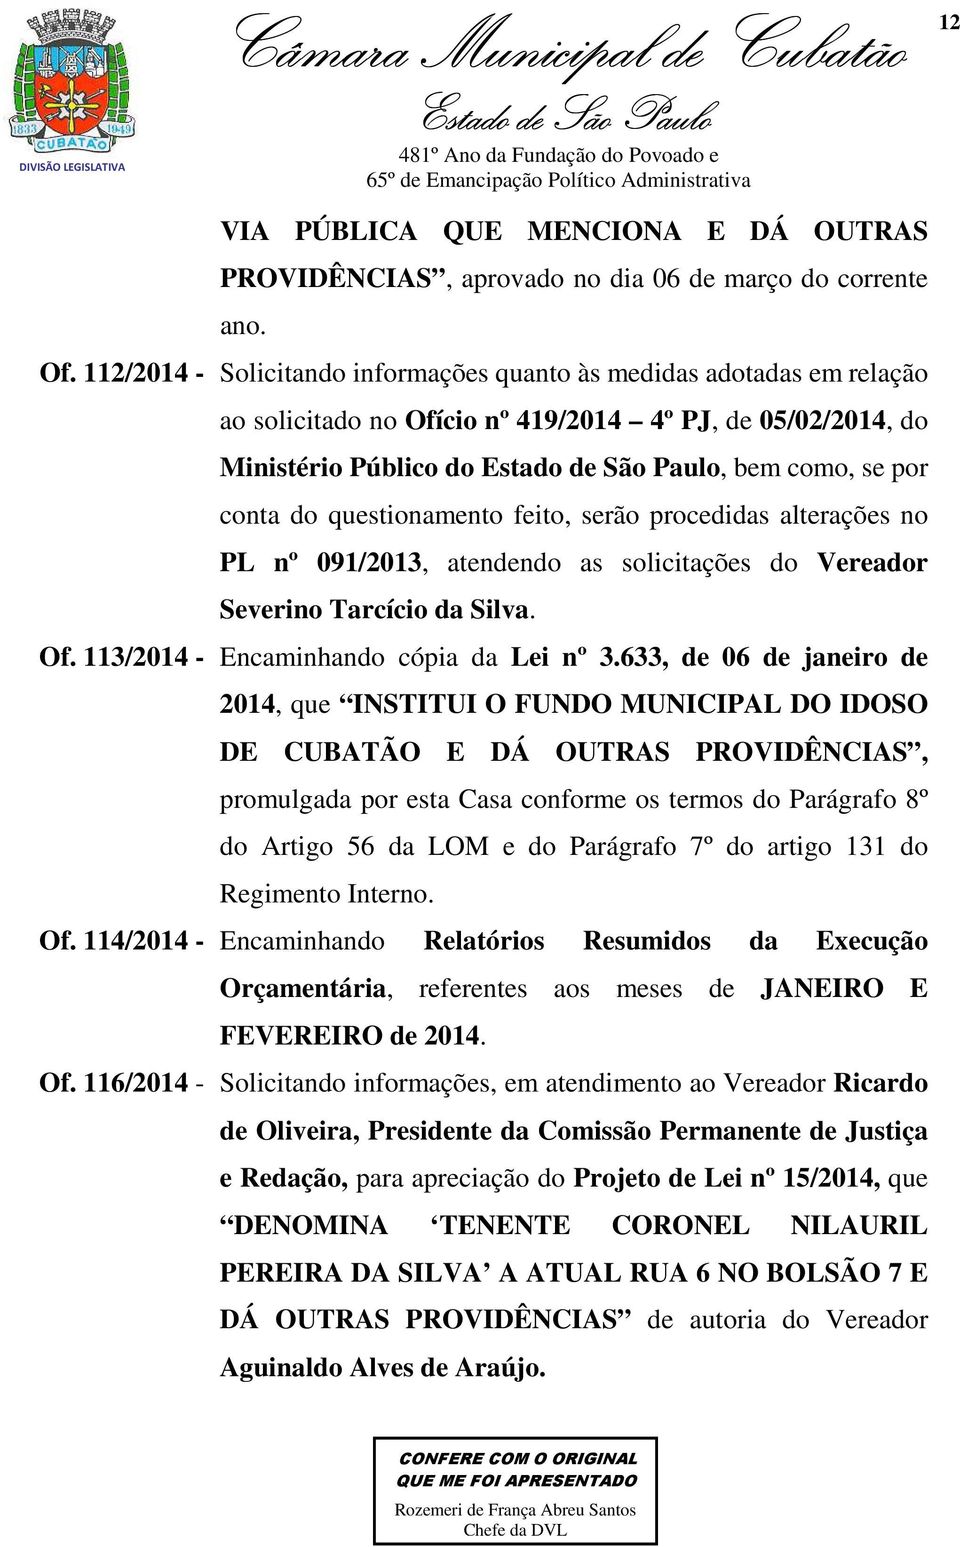 feito, serão procedidas alterações no PL nº 091/2013, atendendo as solicitações do Vereador Severino Tarcício da Silva. Of. 113/2014 - Encaminhando cópia da Lei nº 3.